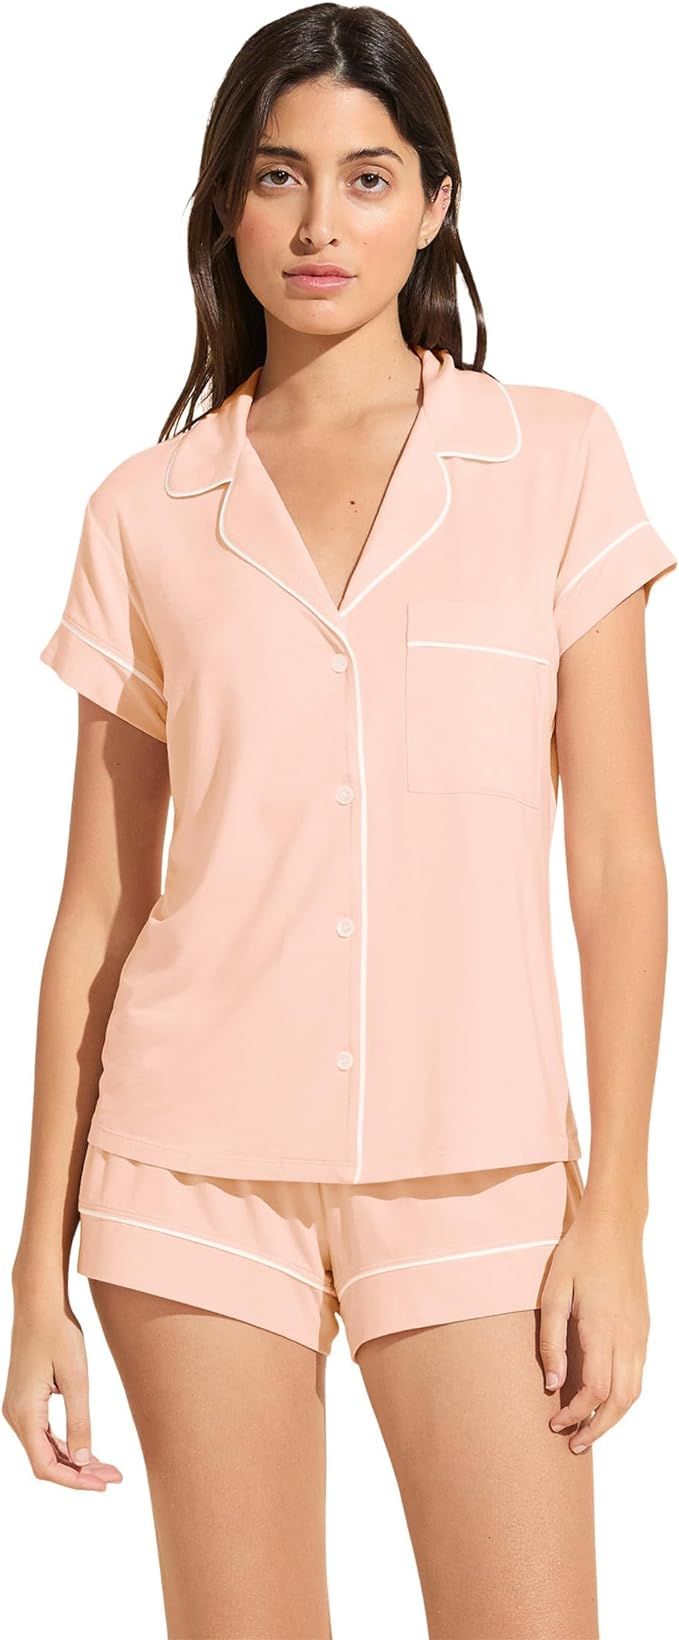 Eberjey Gisele Classic Women's Pajama Set | Short Sleeve Button Down Shirt w Front Pocket, Shorts... | Amazon (US)